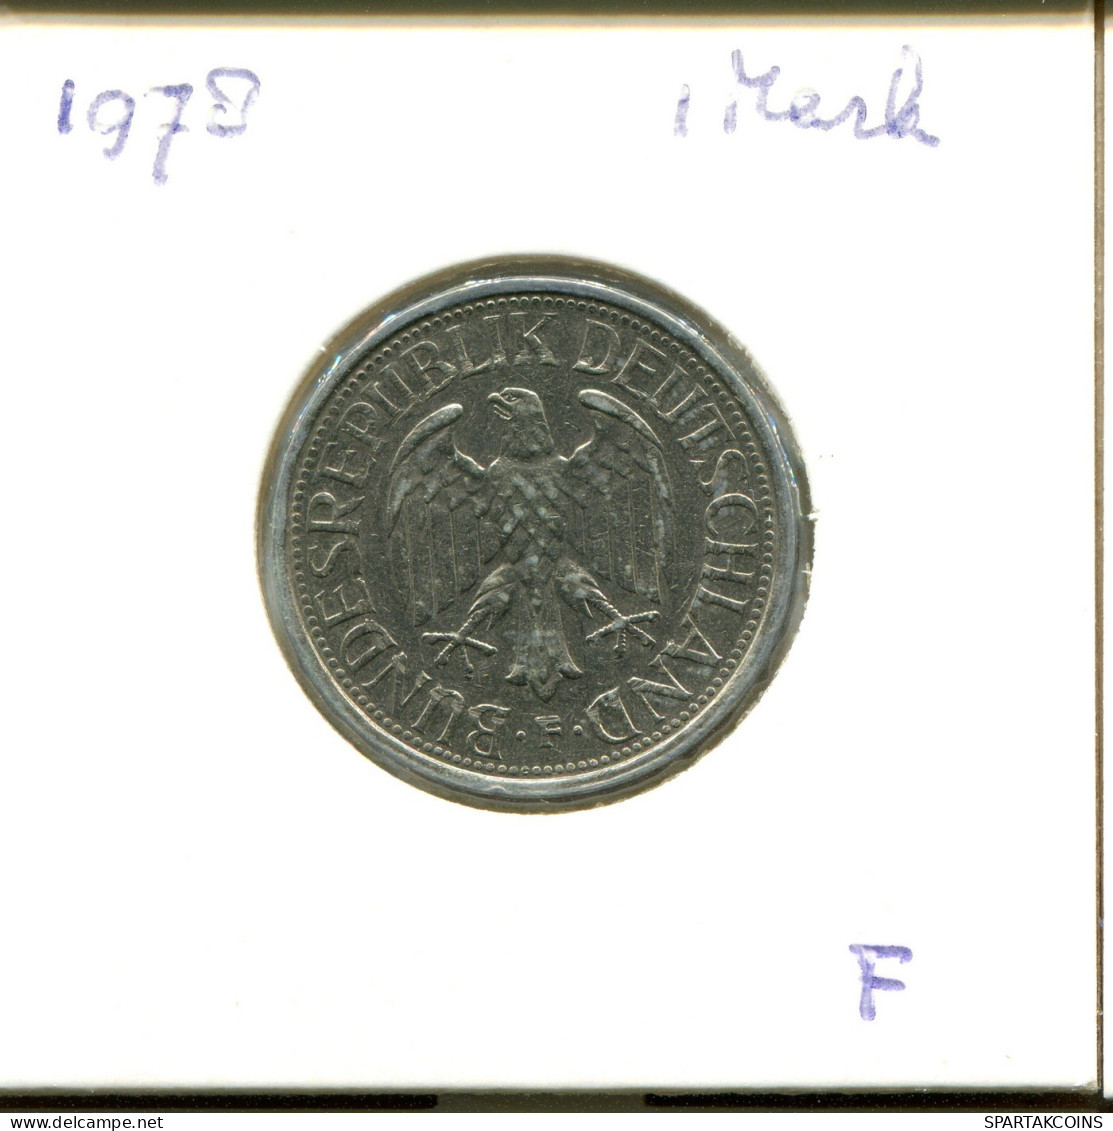 1 DM 1978 F BRD DEUTSCHLAND Münze GERMANY #DA849.D.A - 1 Mark